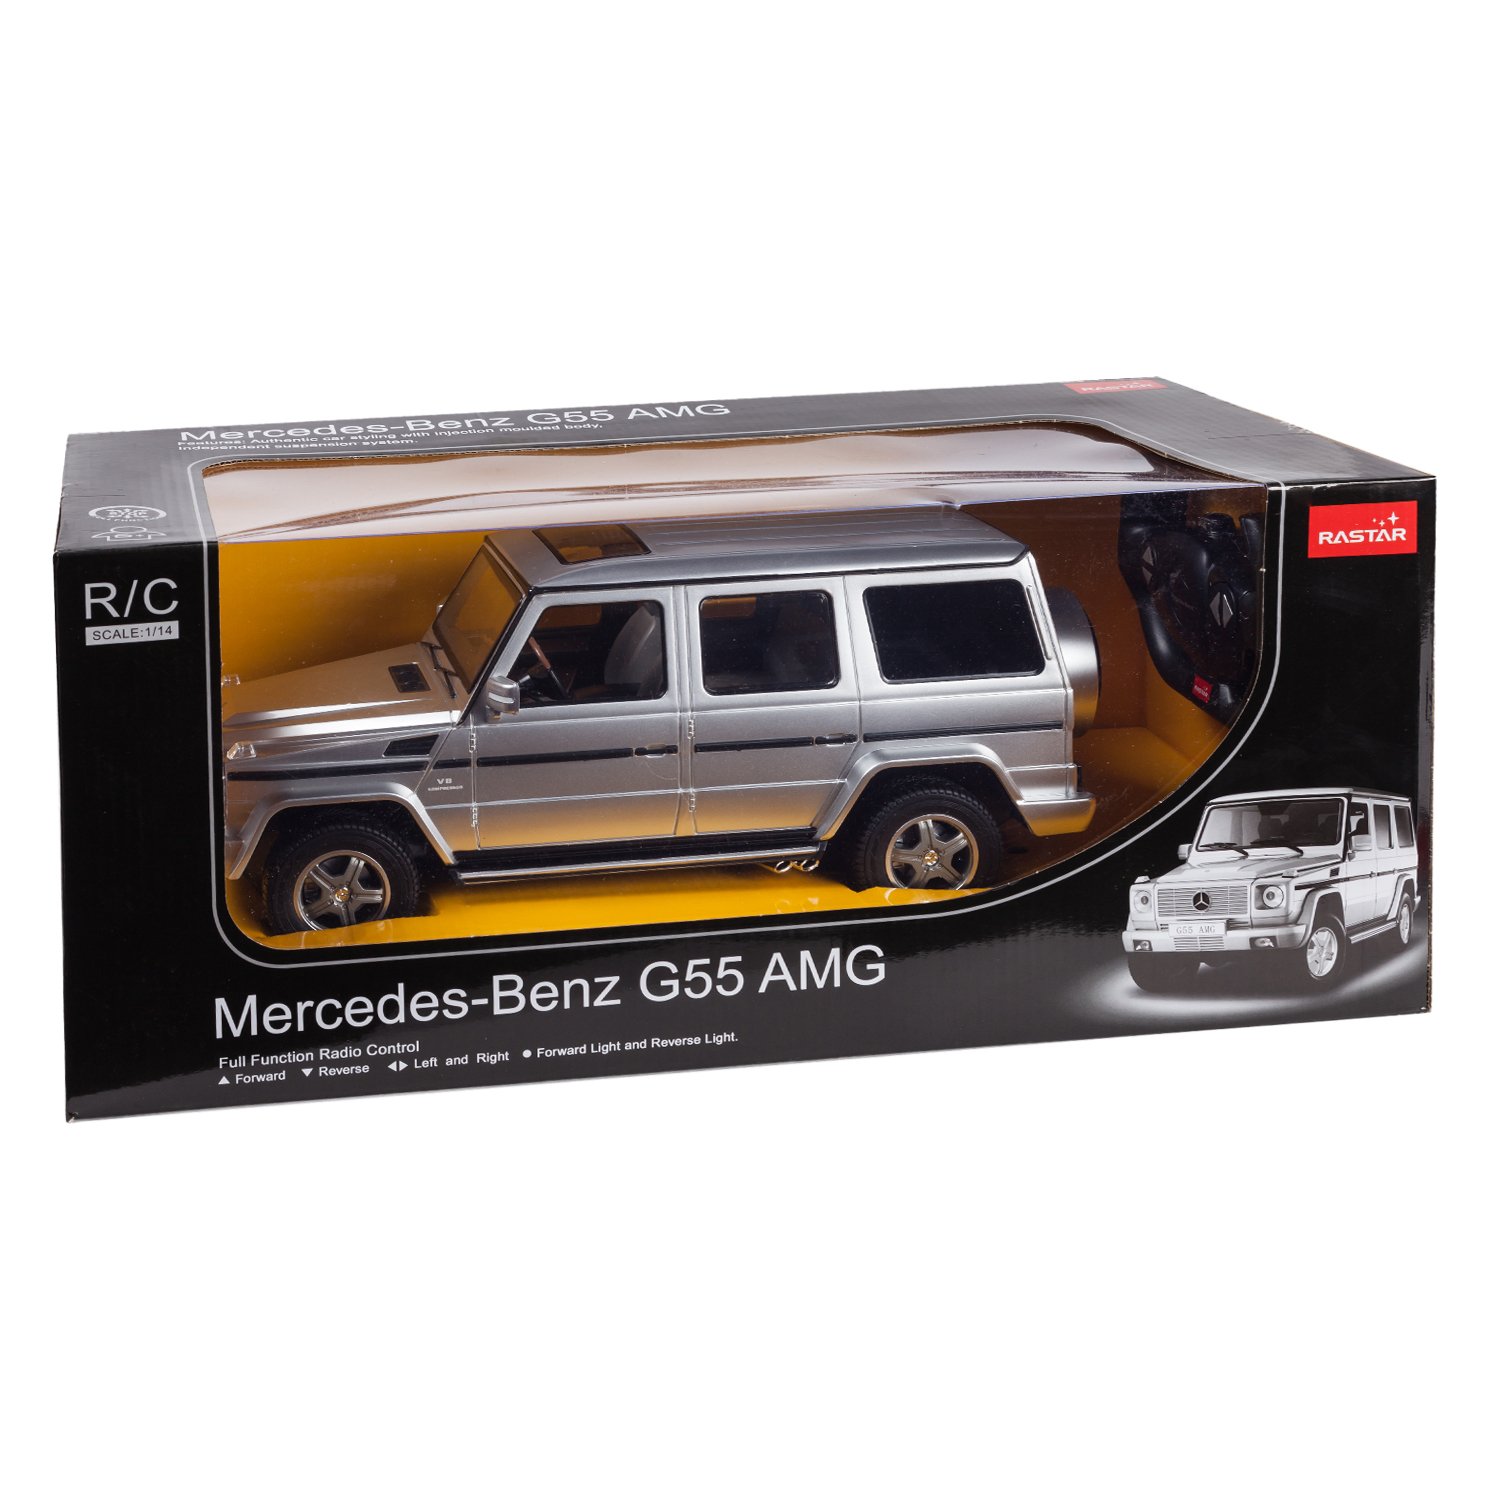 Машинка радиоуправляемая Rastar Mercedes-Benz G55 1:14 серебряная